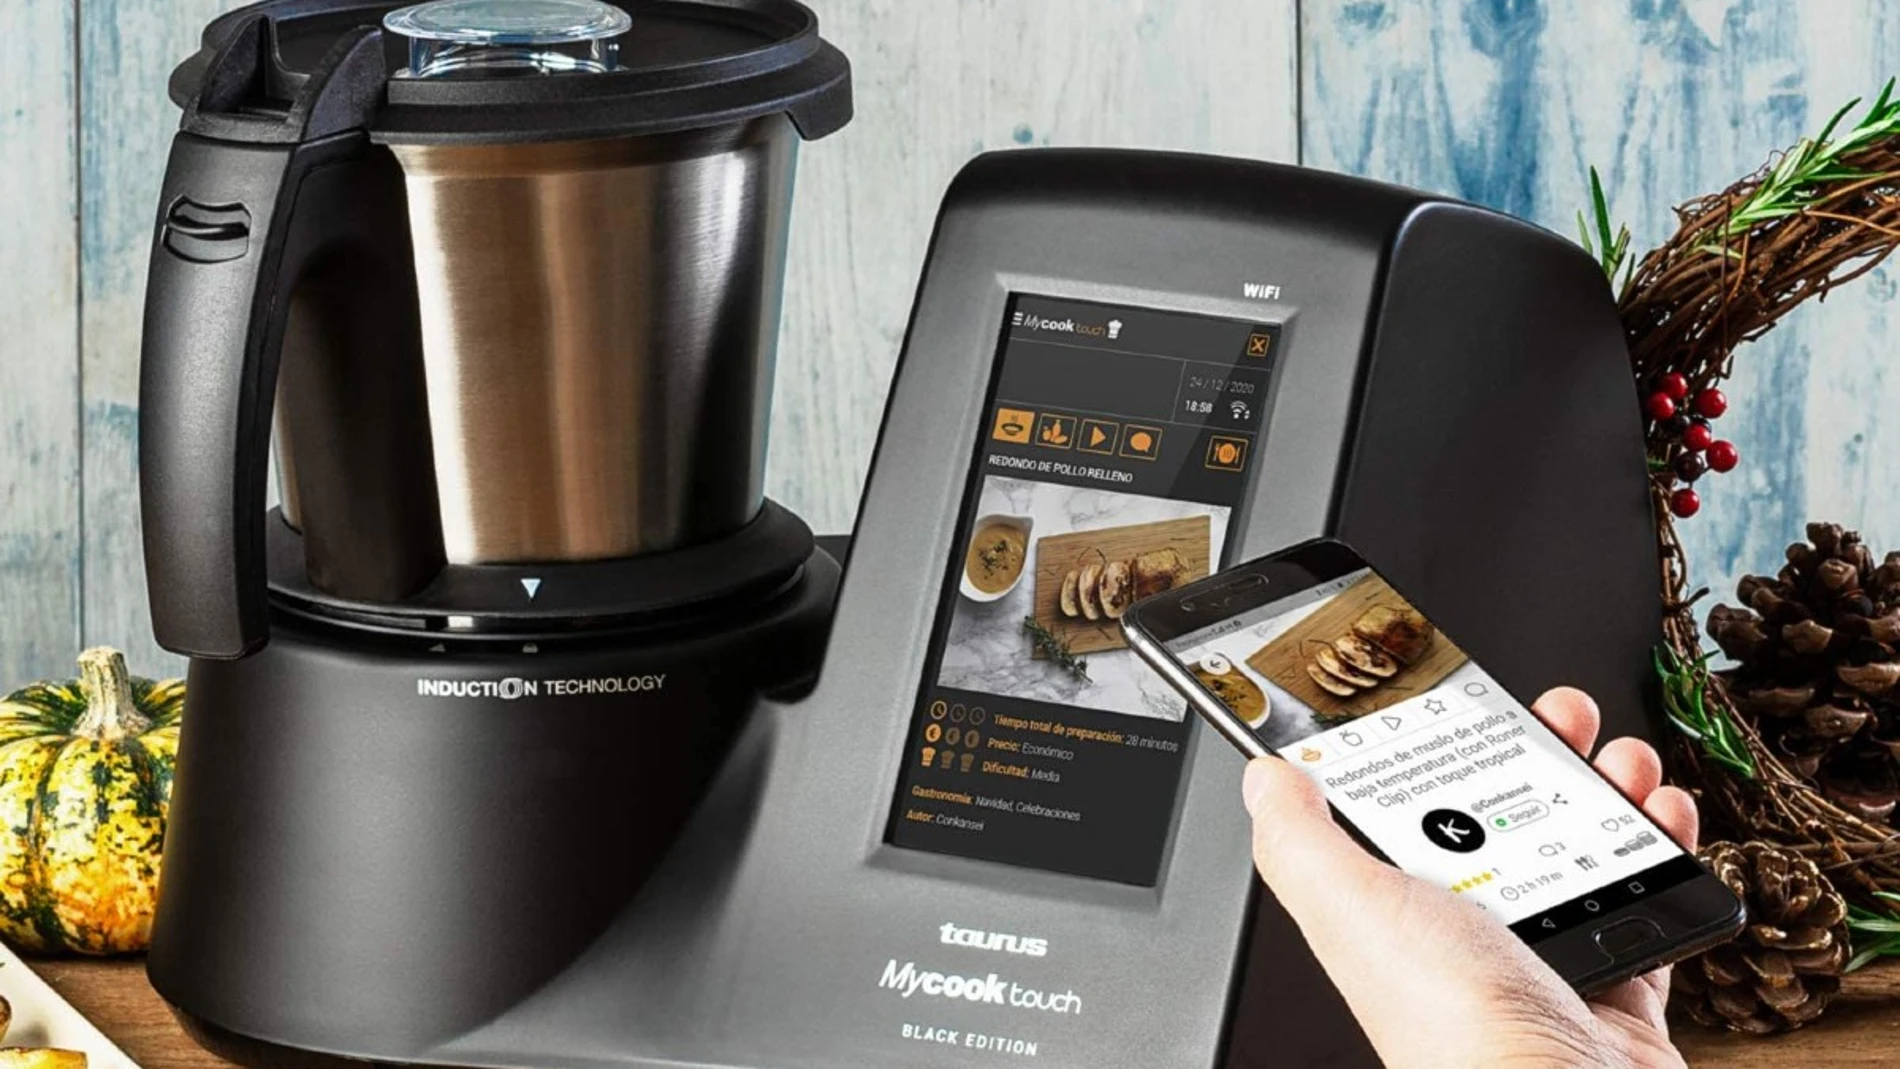 El Robot de cocina de Taurus Mycook Touch Black Edition con un descuento de más del 40%